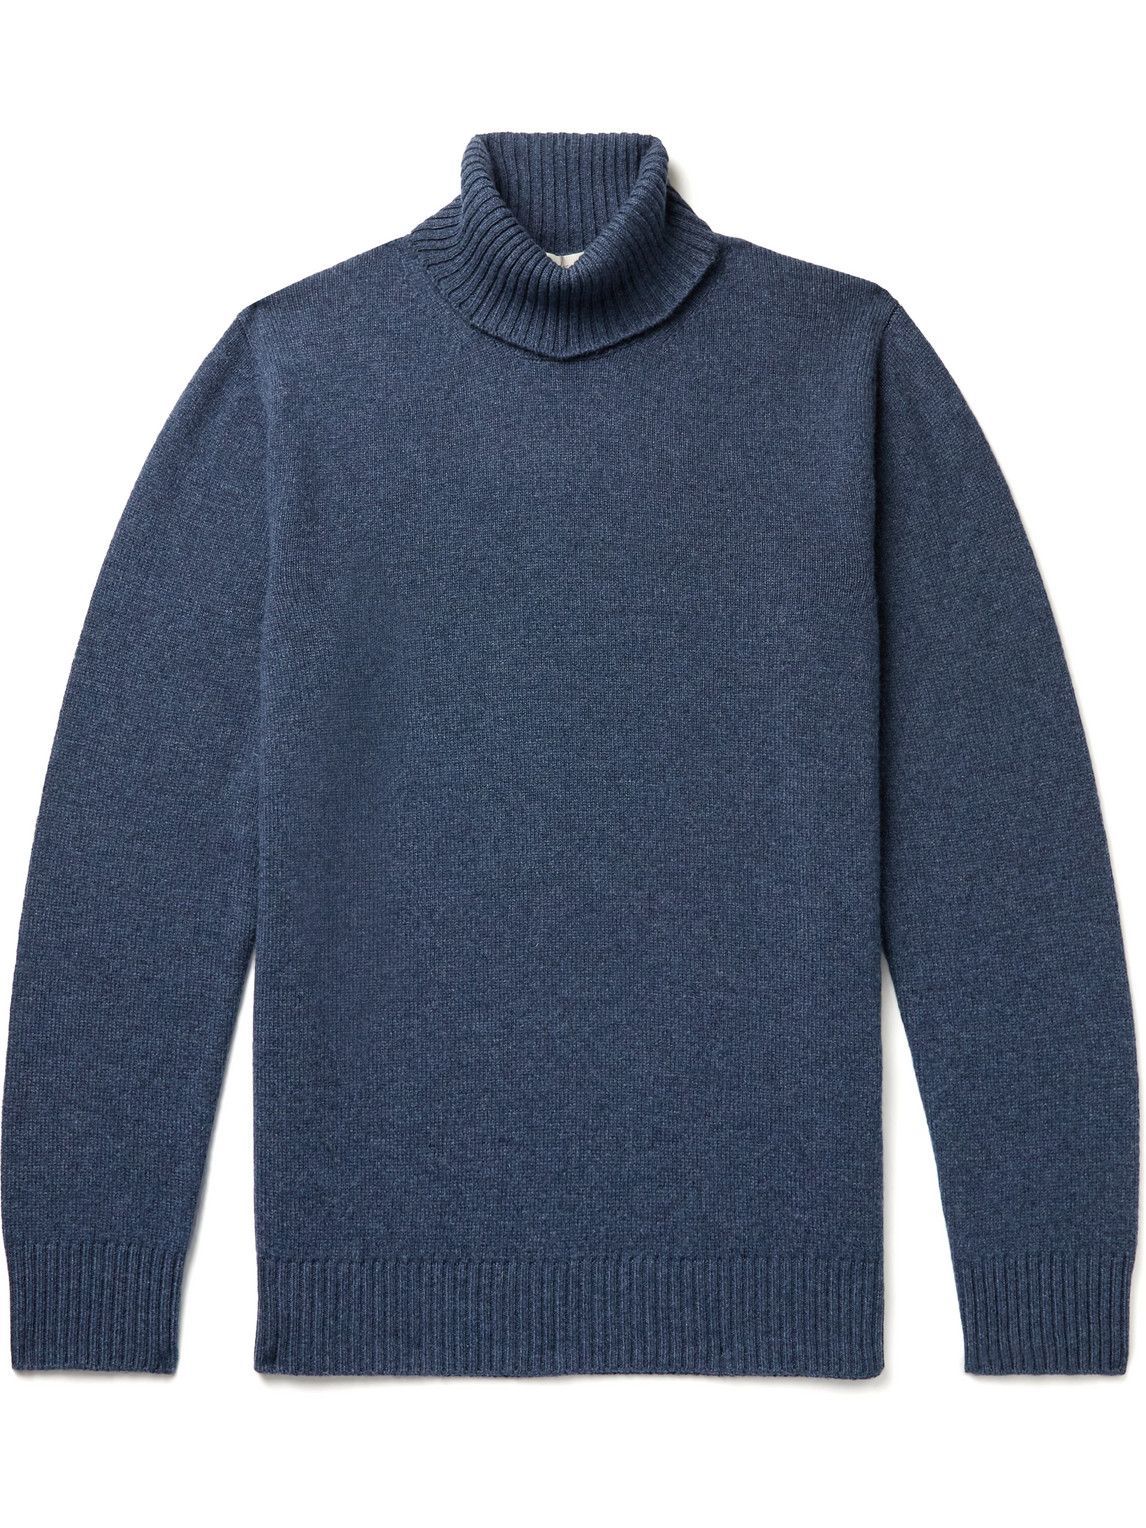 Altea - Cashmere Rollneck Sweater - Blue Altea